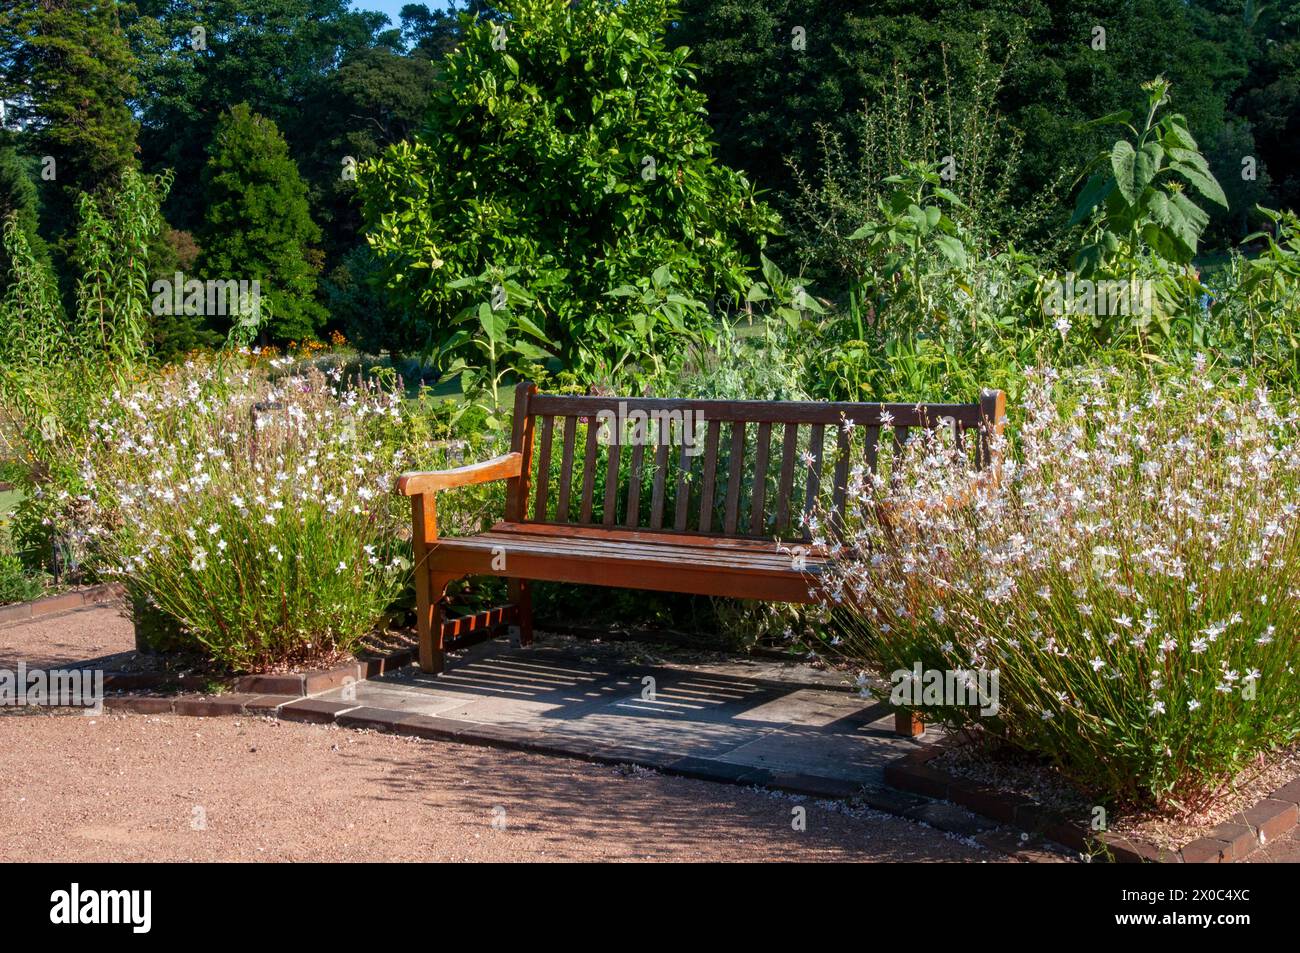 Sydney Australia, posto a sedere nel giardino circondato da piante gaura bianche fiorite Foto Stock